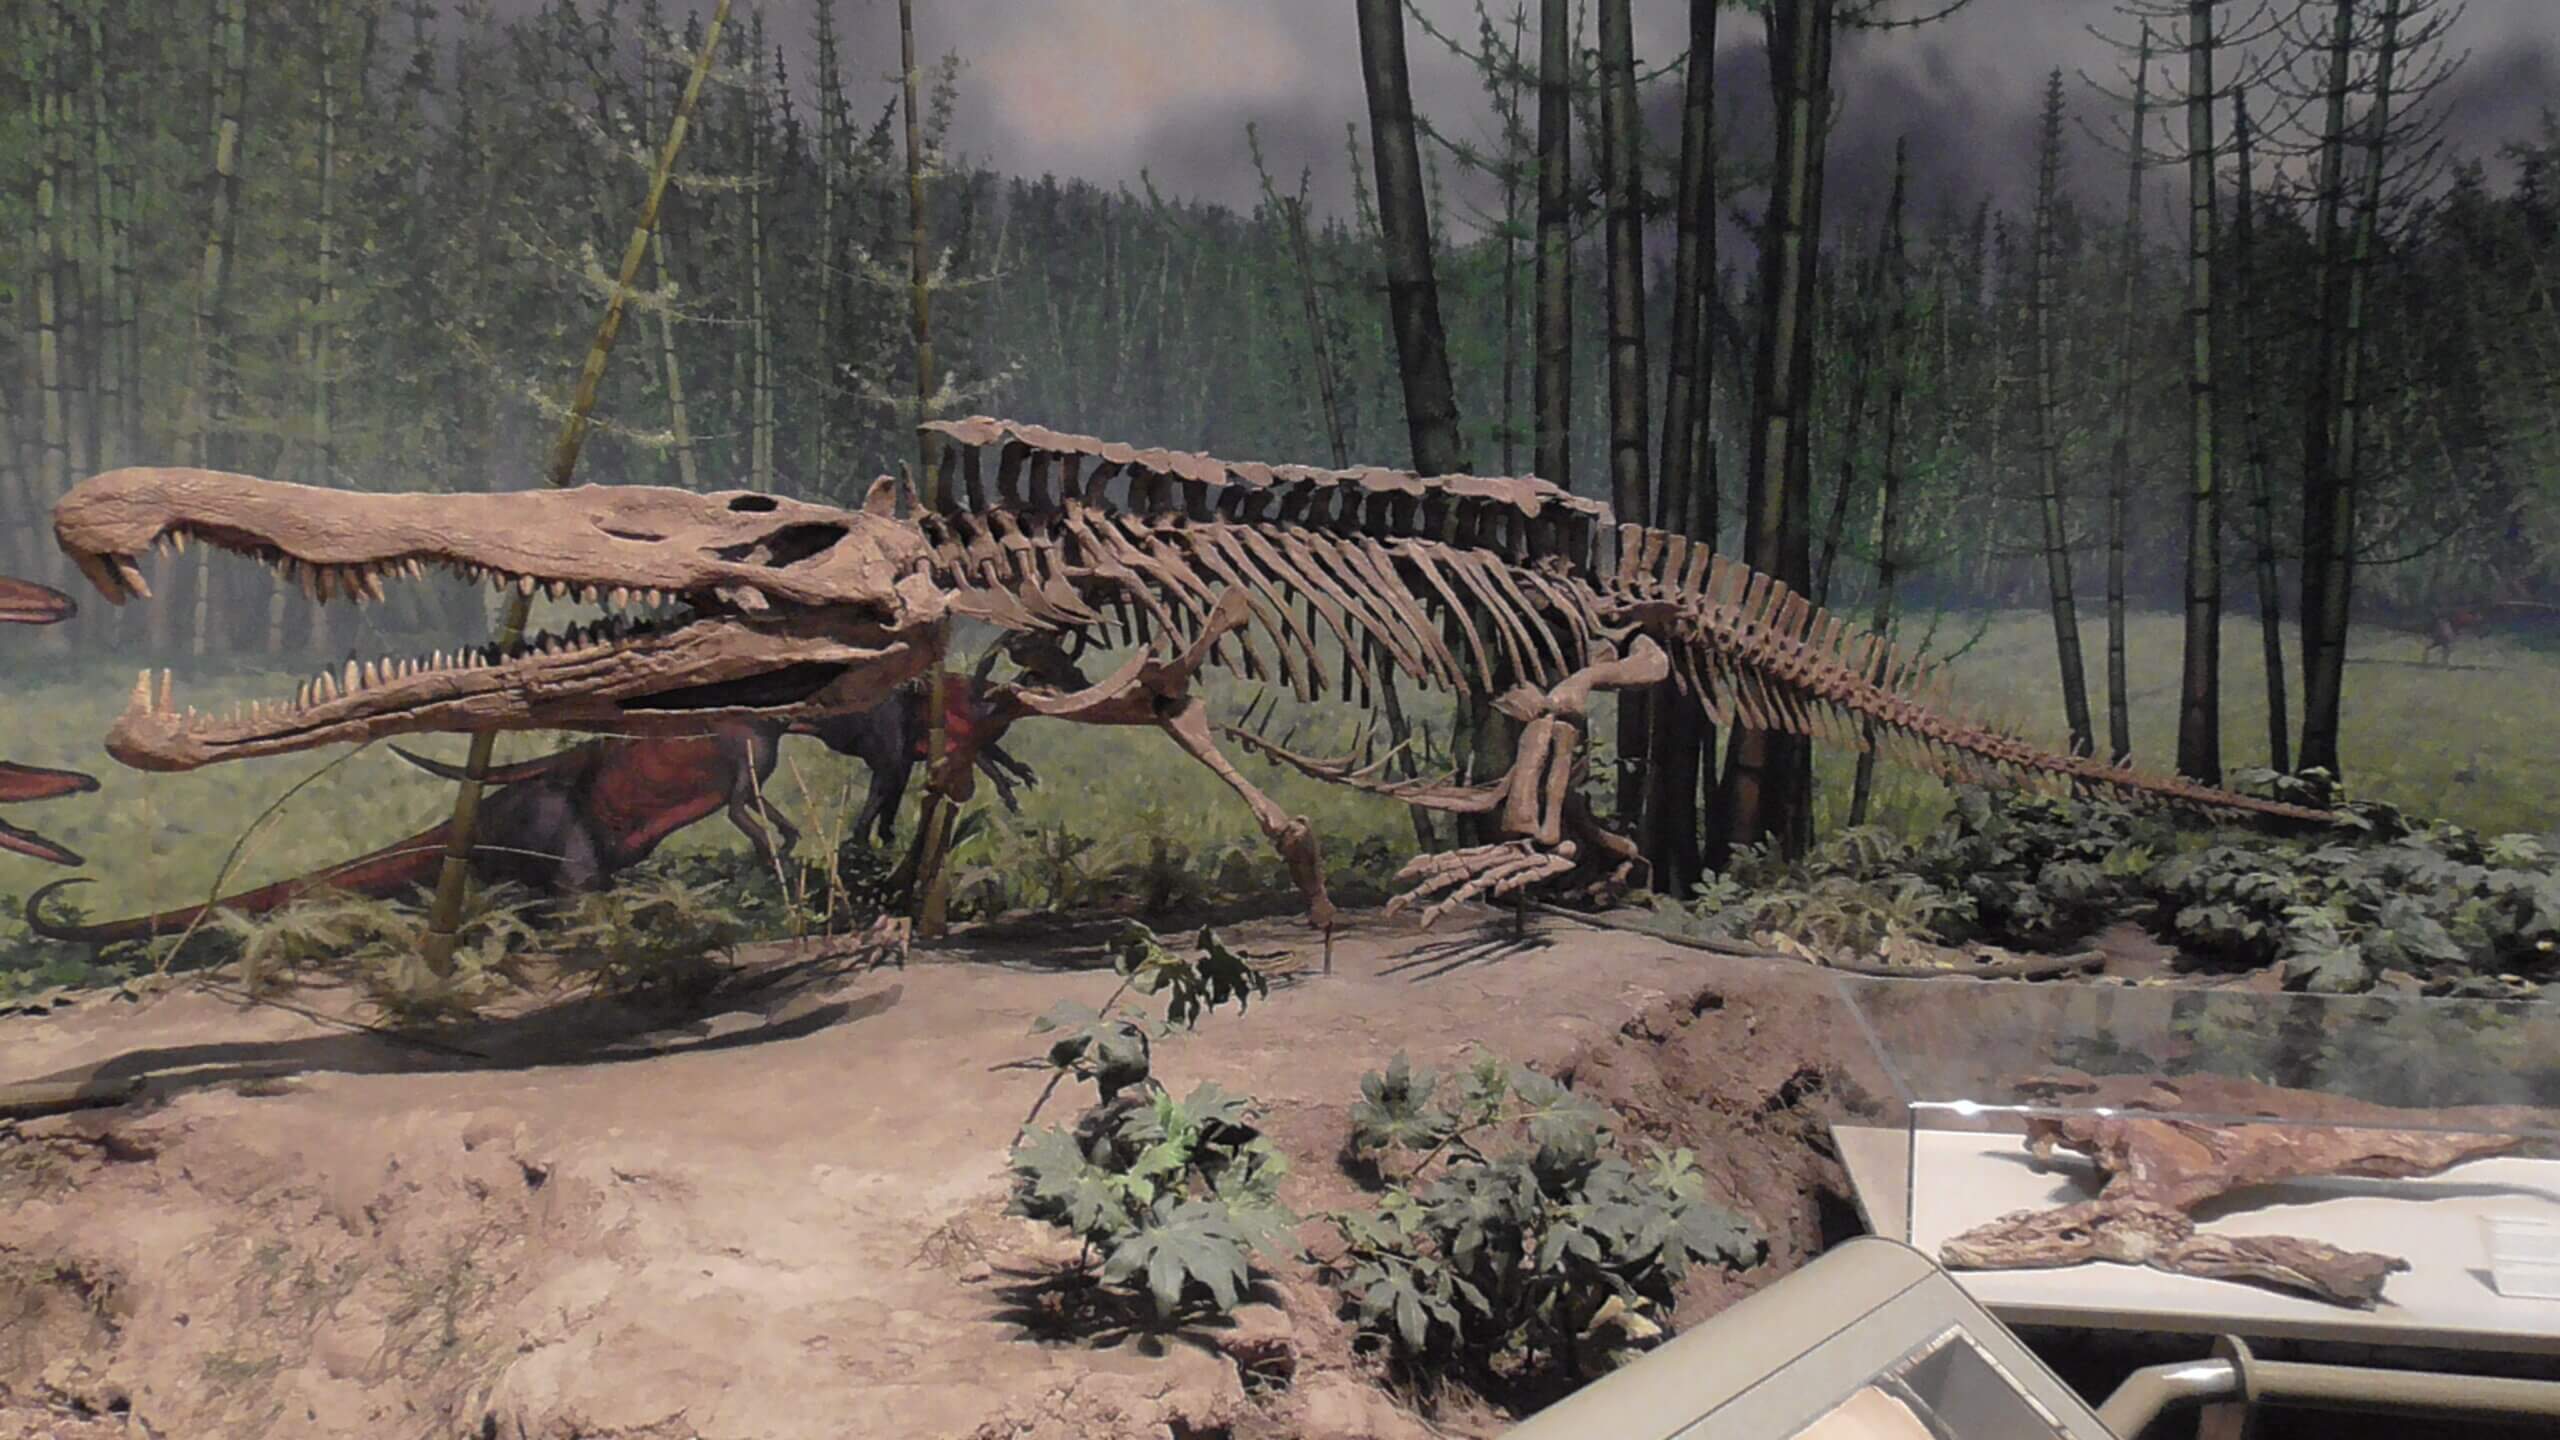 Redondasaurus - a 21 foot phytosaur that ate small dinosaurs